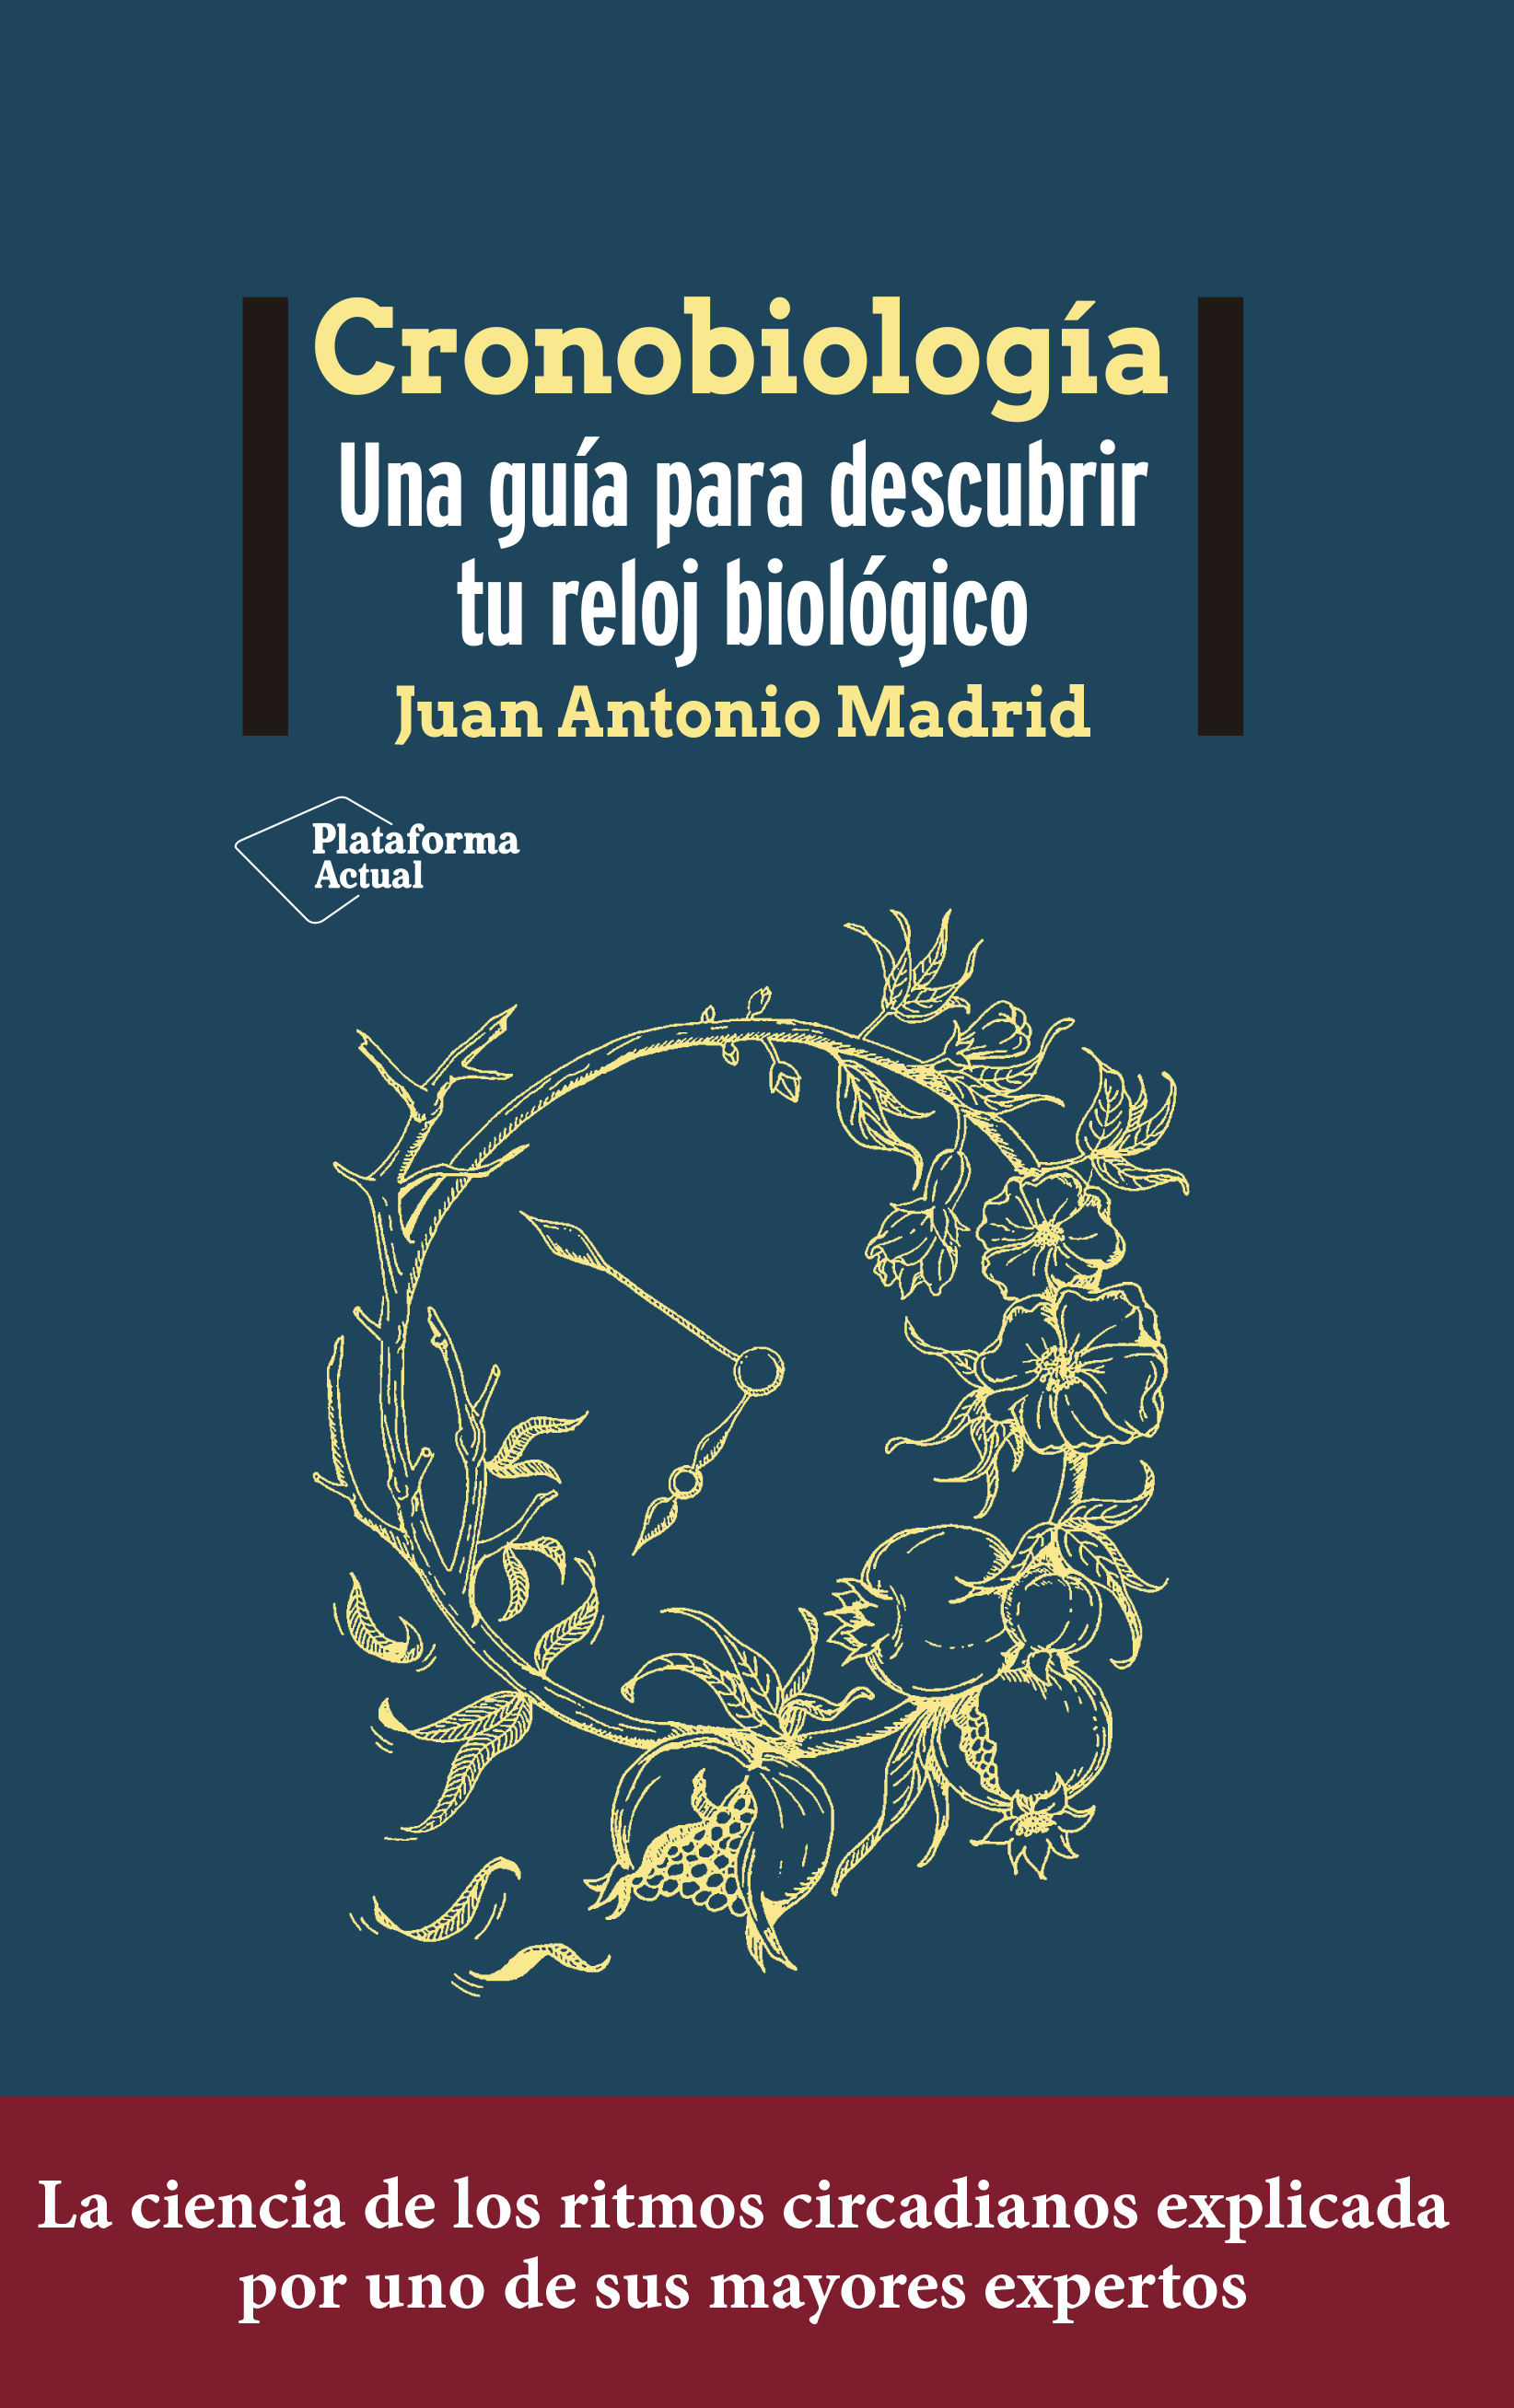 Juan Antonio Madrid desentraña los secretos de la cronobiología